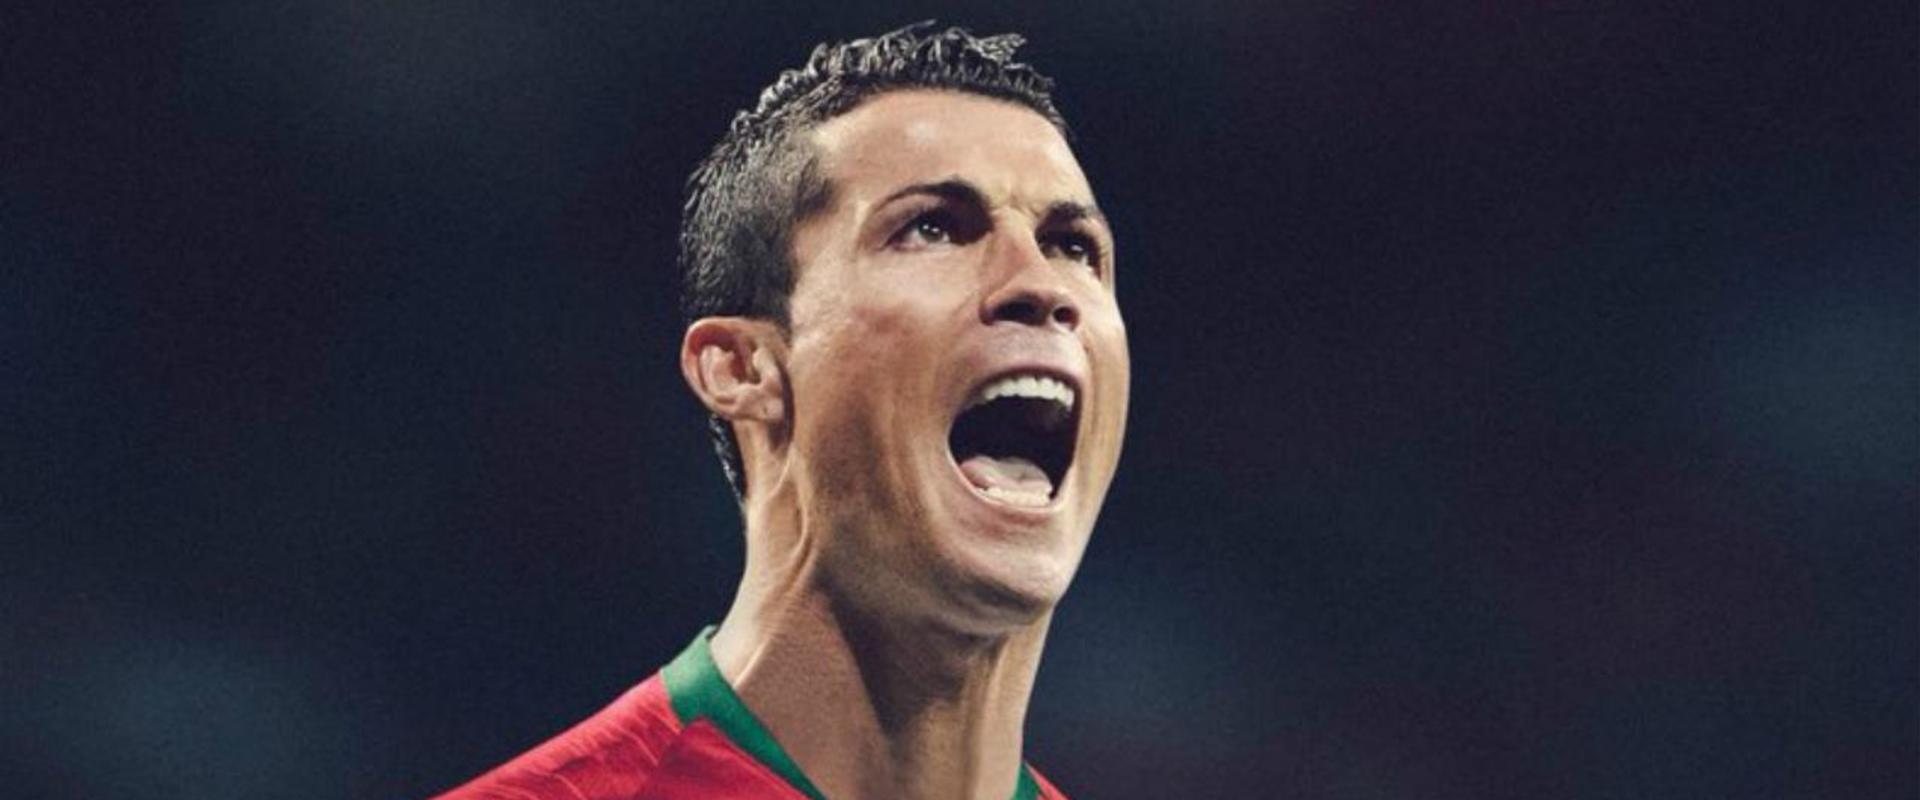 Nincs meglepetés - a portugál marad a FIFA19 borítóján